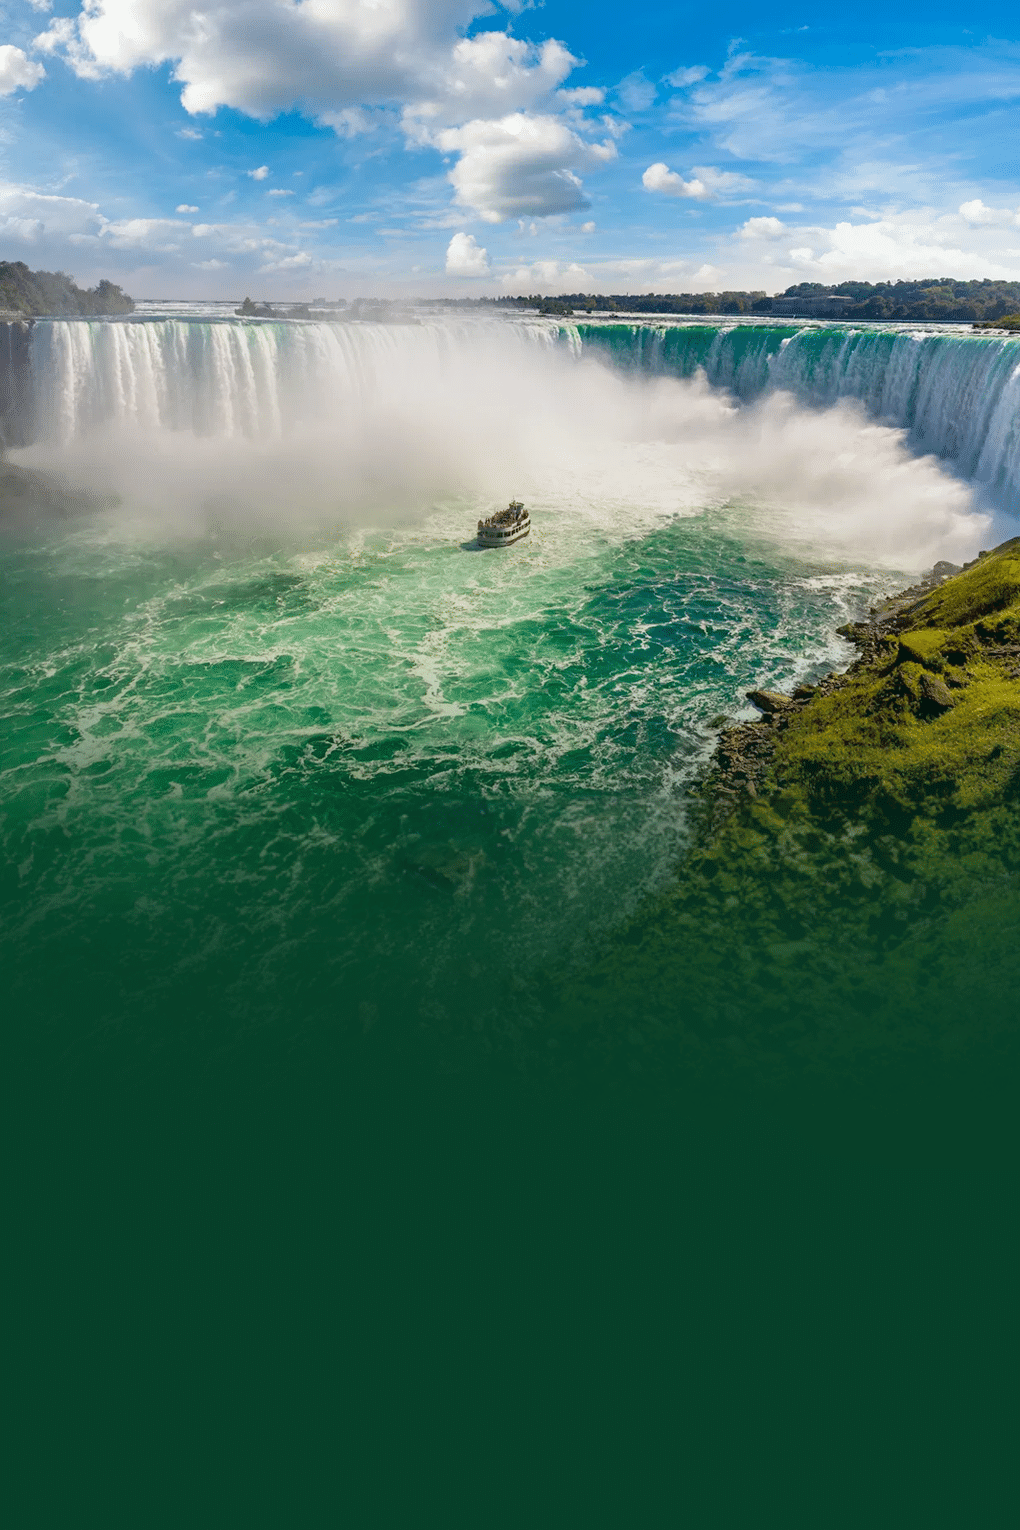 USA Vacation with Niagara Falls